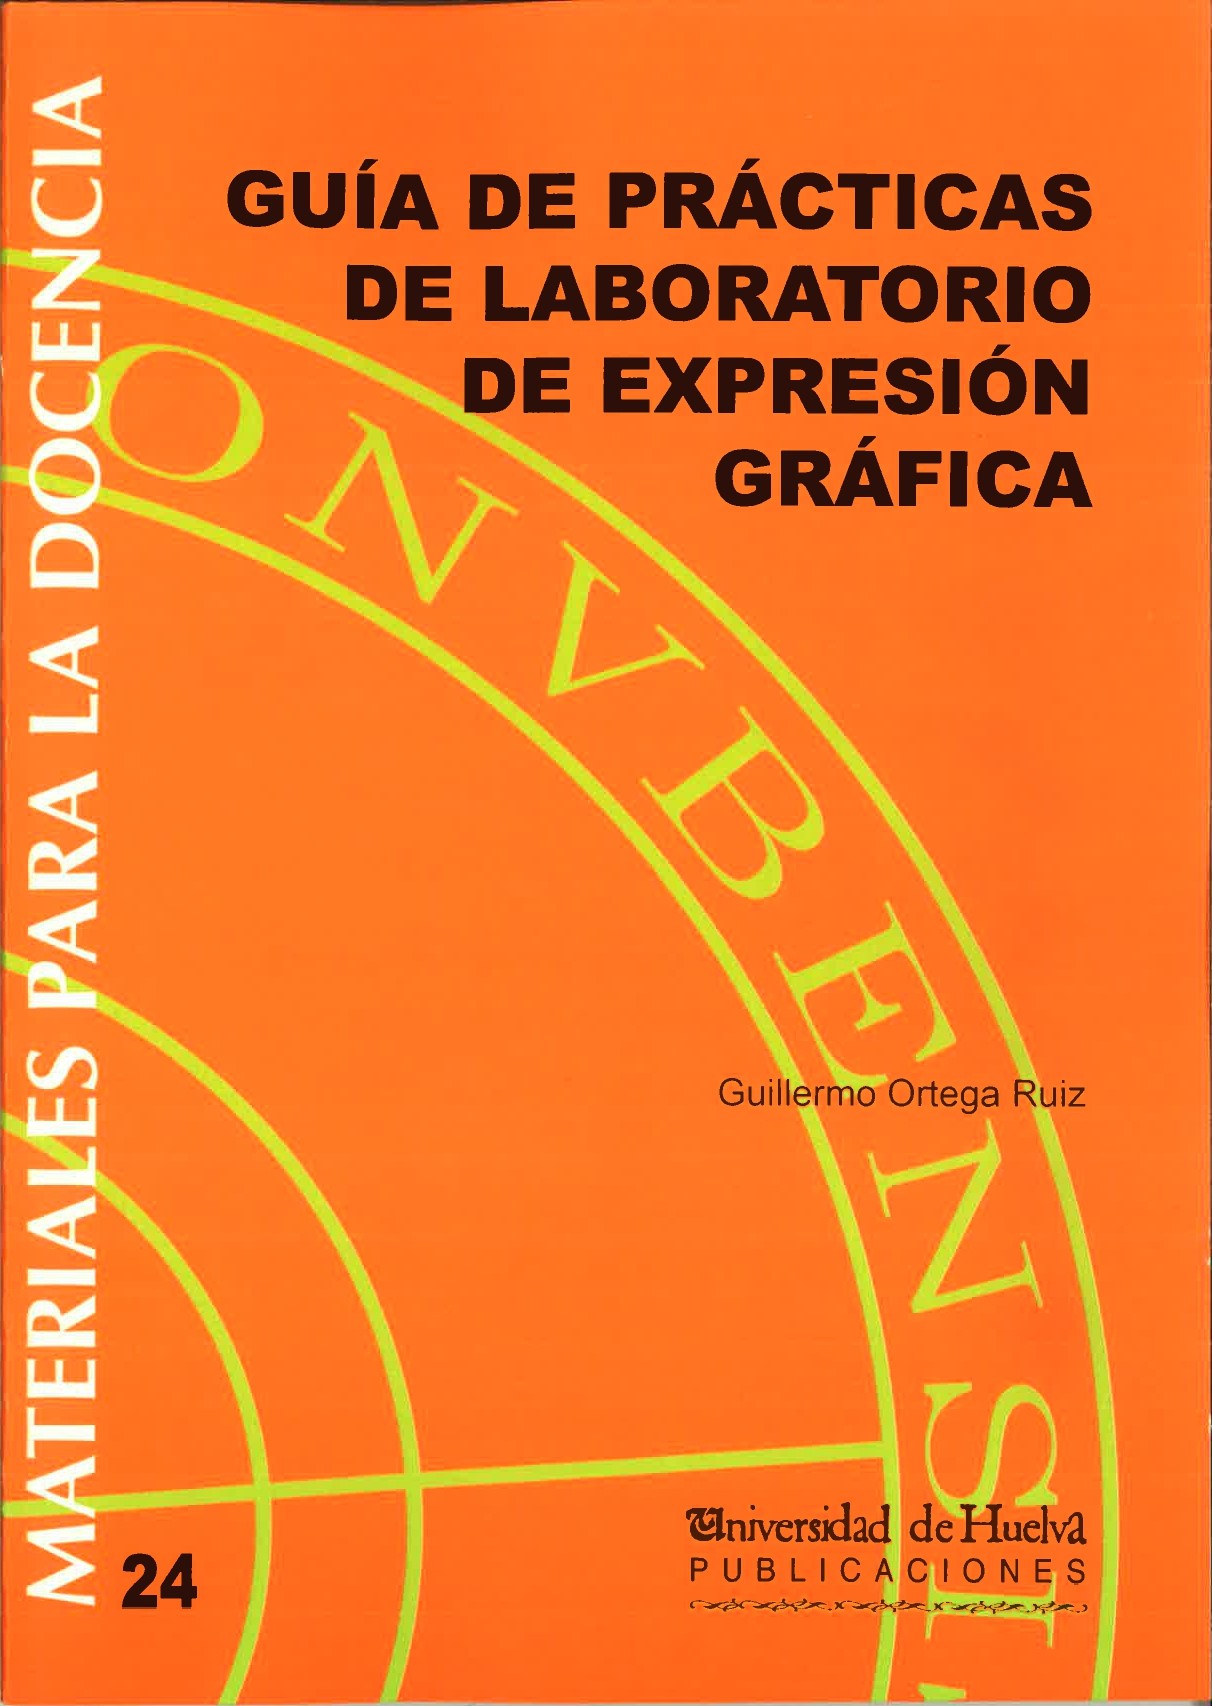 Imagen de portada del libro Guía de prácticas de laboratorio de expresión gráfica